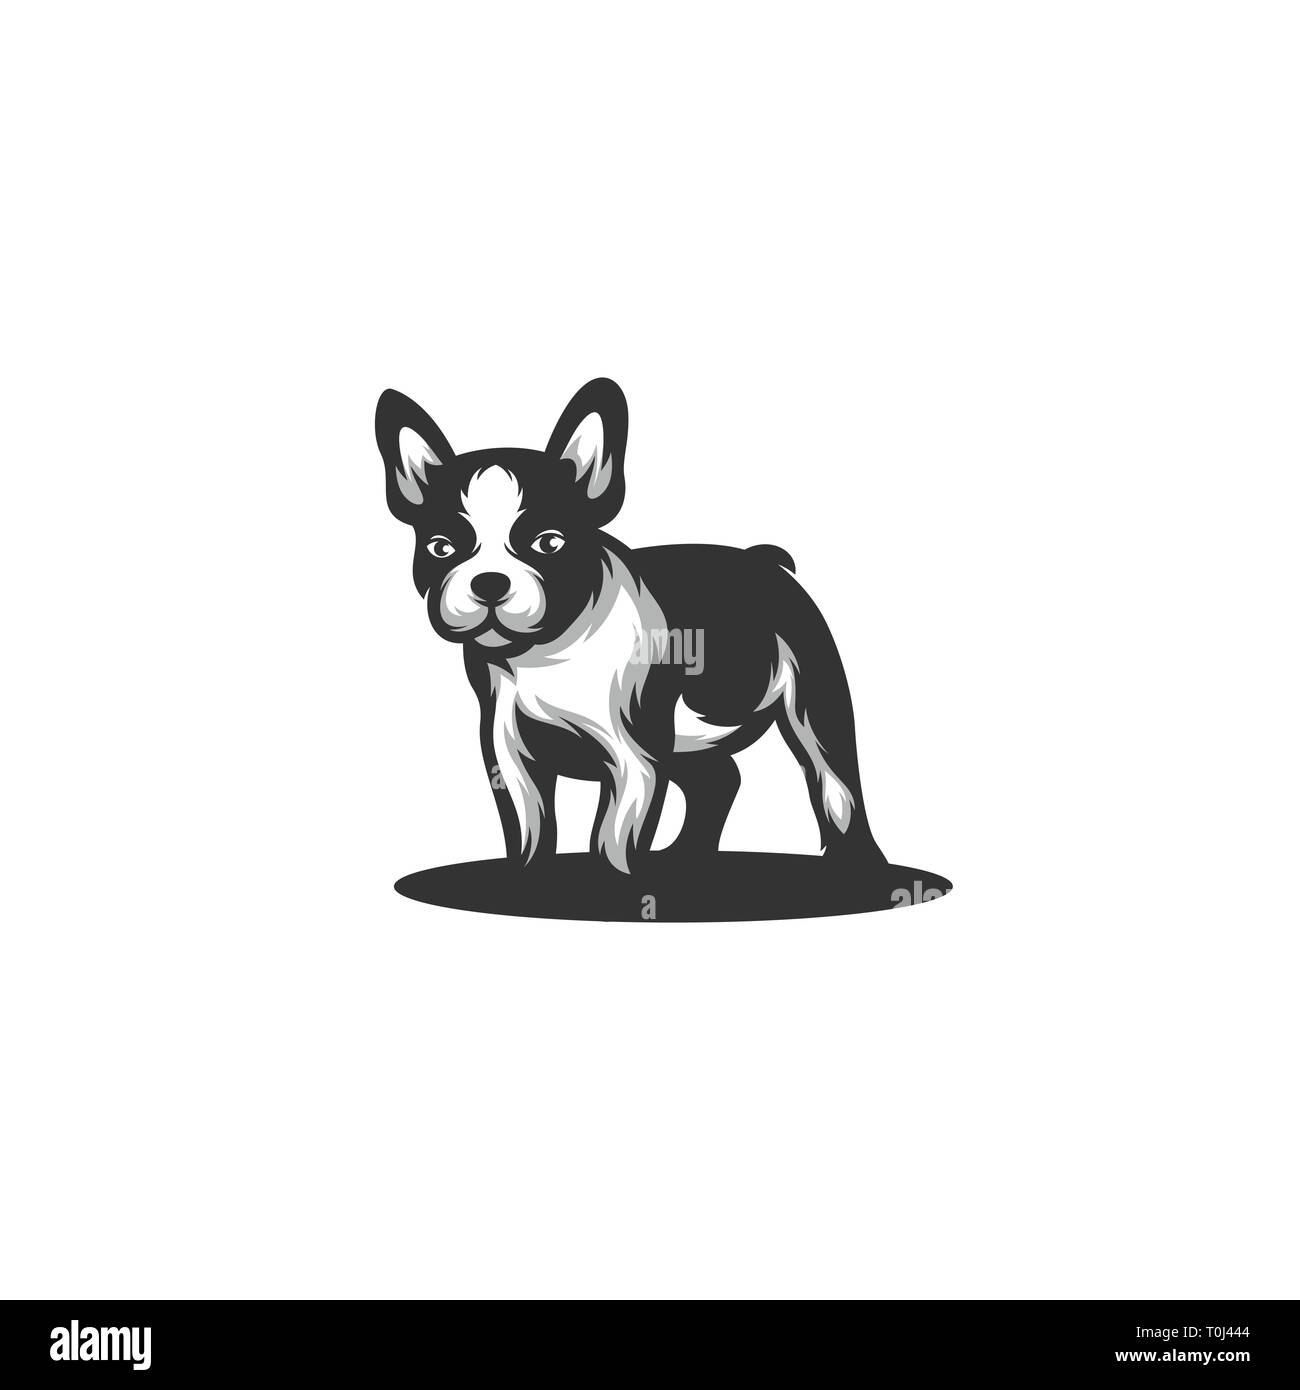 Hund Farbe Schwarz Konzeption Illustration Vektor Design vorlage. Geeignet für kreative Industrie, Multimedia, Entertainment, Ausbildungen, Shop, und alle rela Stock Vektor